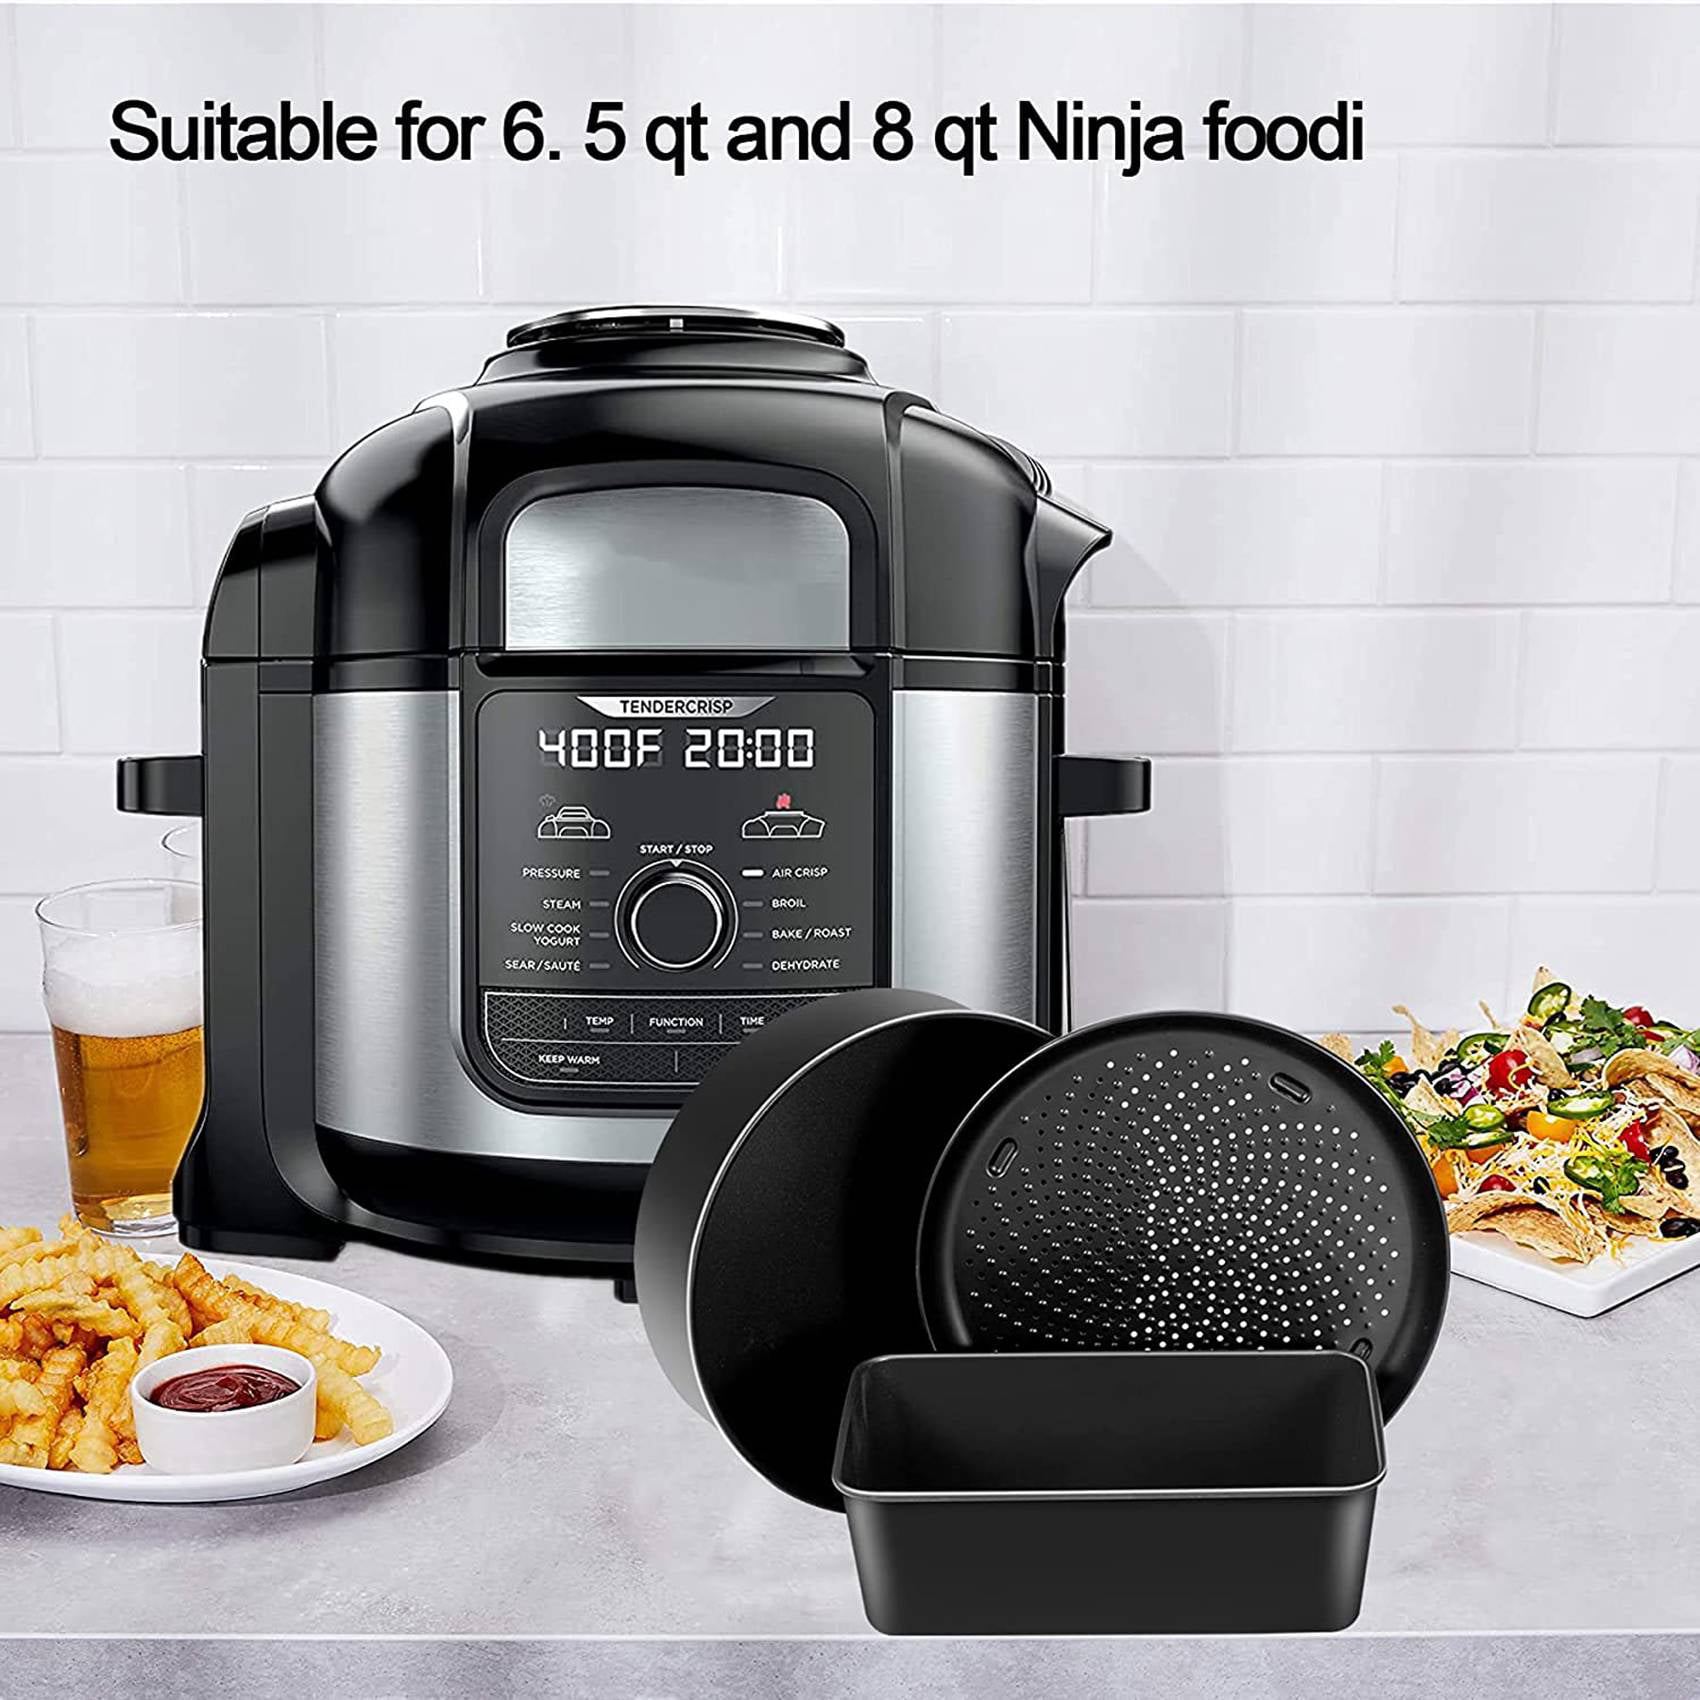 Baking Set for Ninja Foodi 6.5 Qt, 8 Qt, Ninja Foodi Pressure